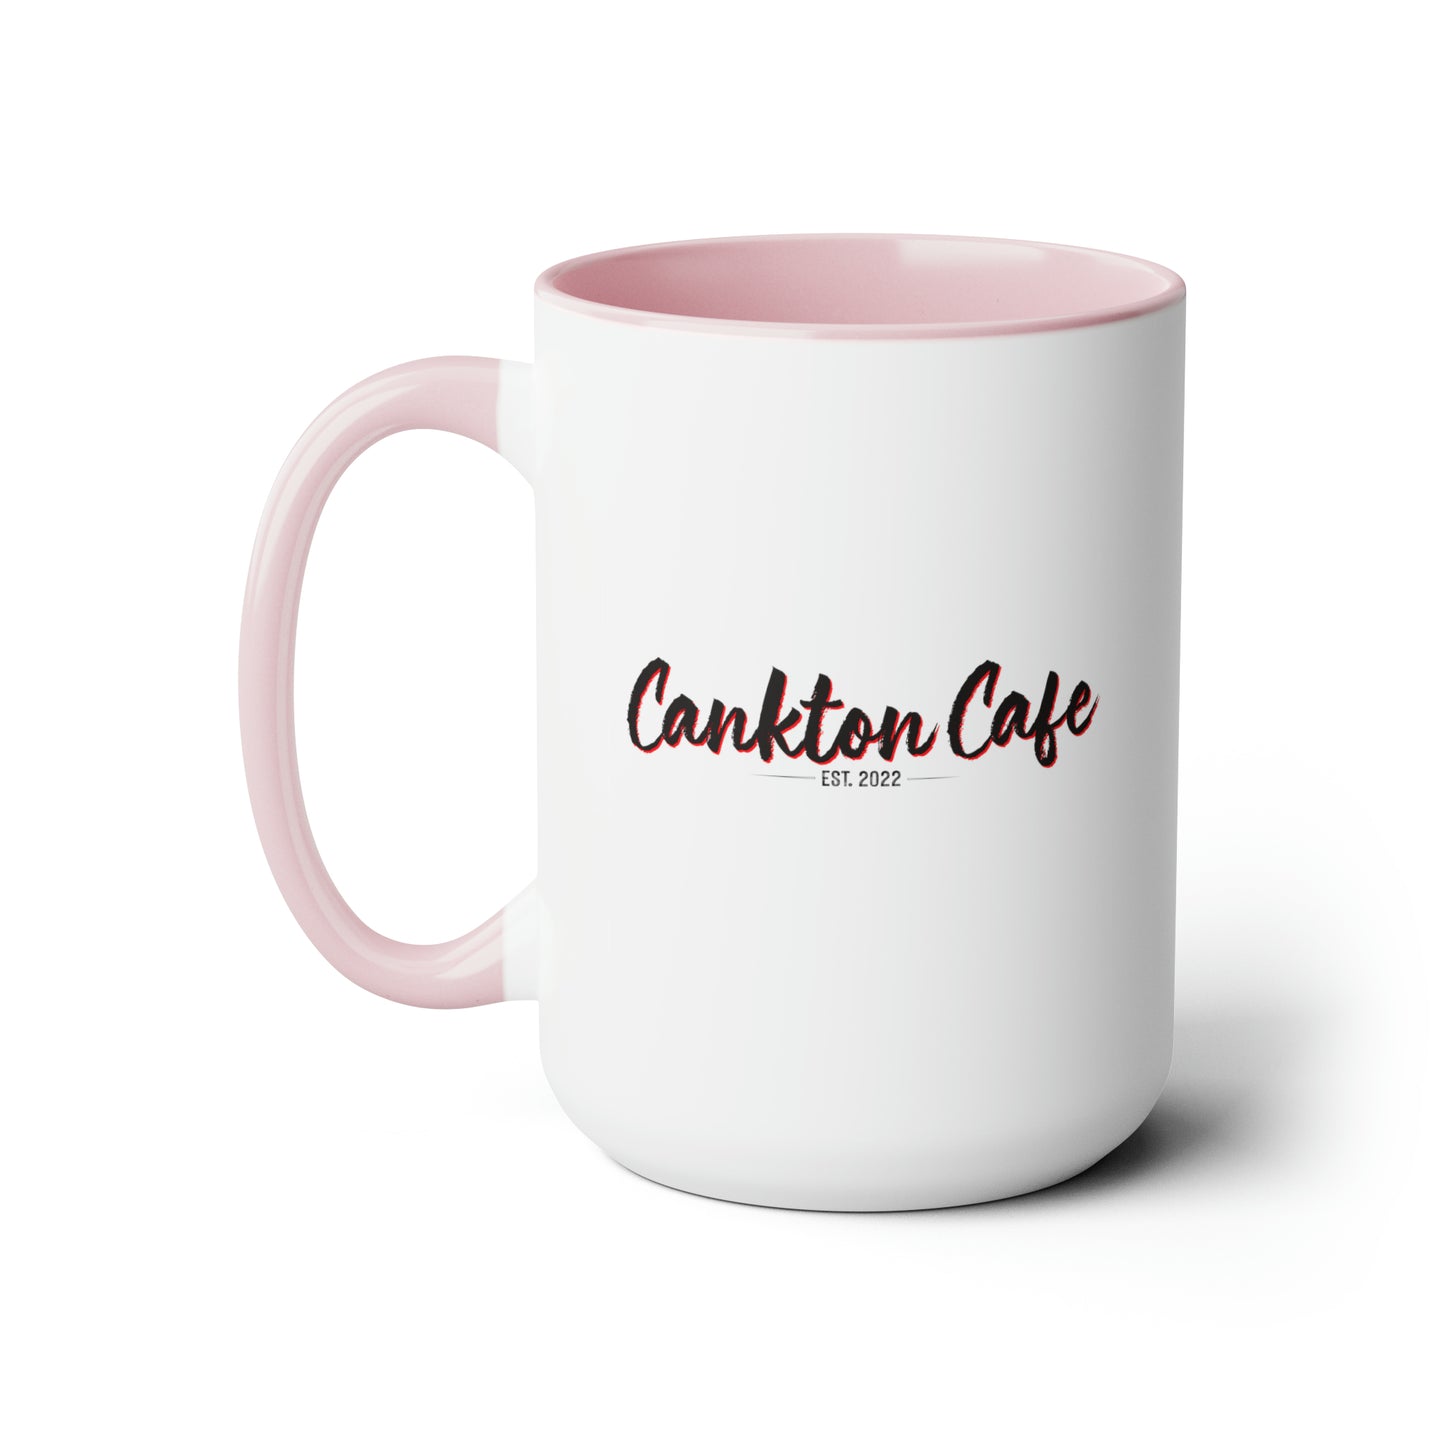 Cankton Cafe Two-Tone Coffee Mugs, 15oz